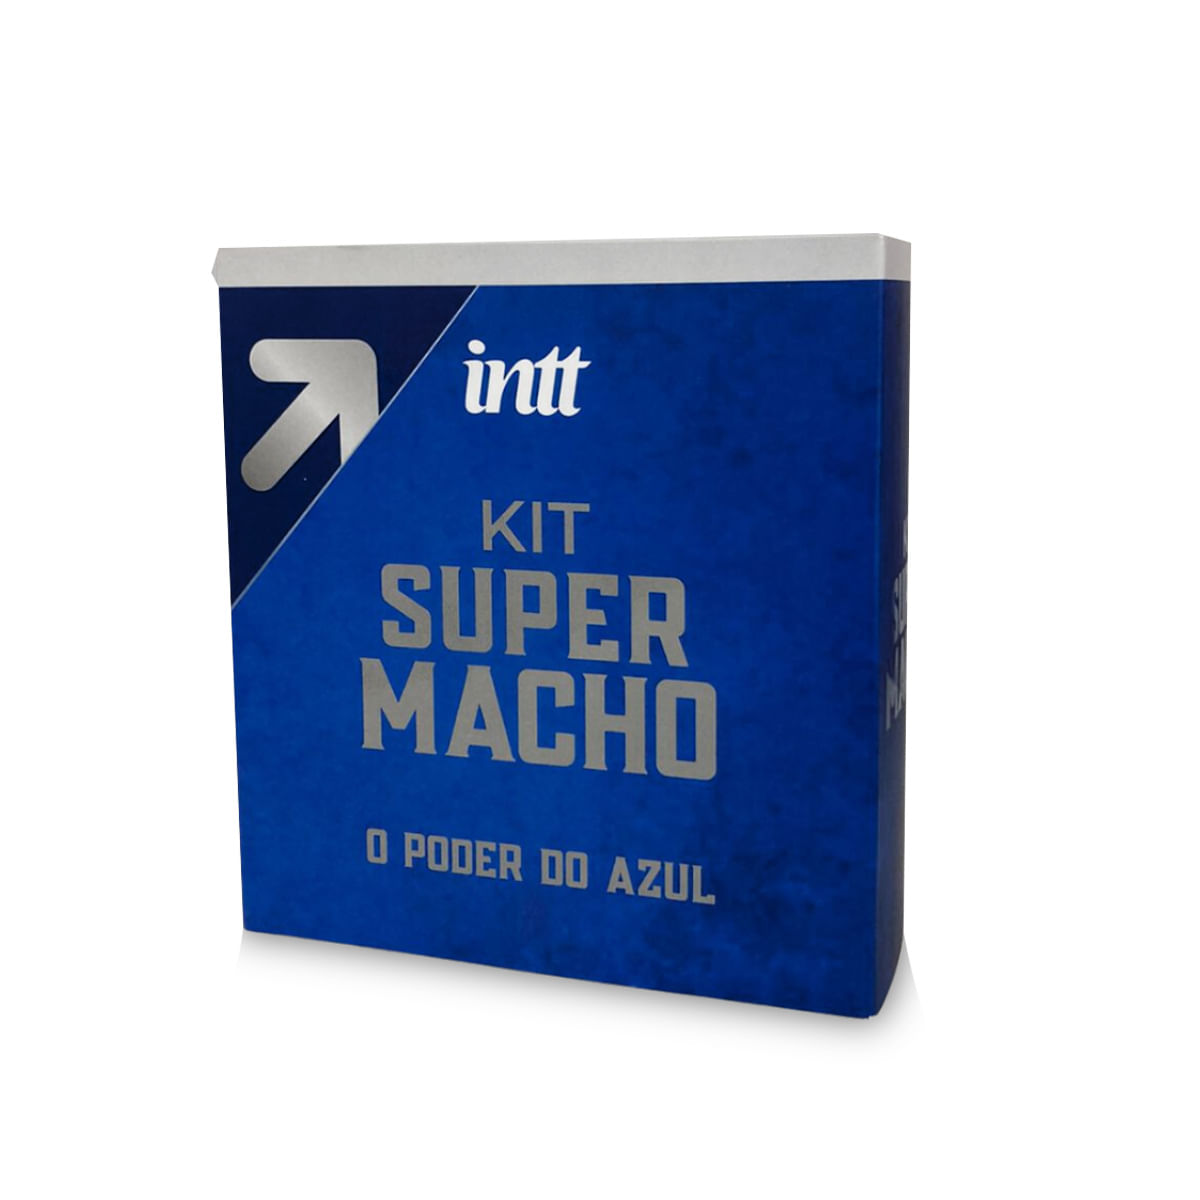 Kit Super Macho com 1 Super Macho com 30 Cápsulas e 1 Super Macho Gel 17 ml Intt